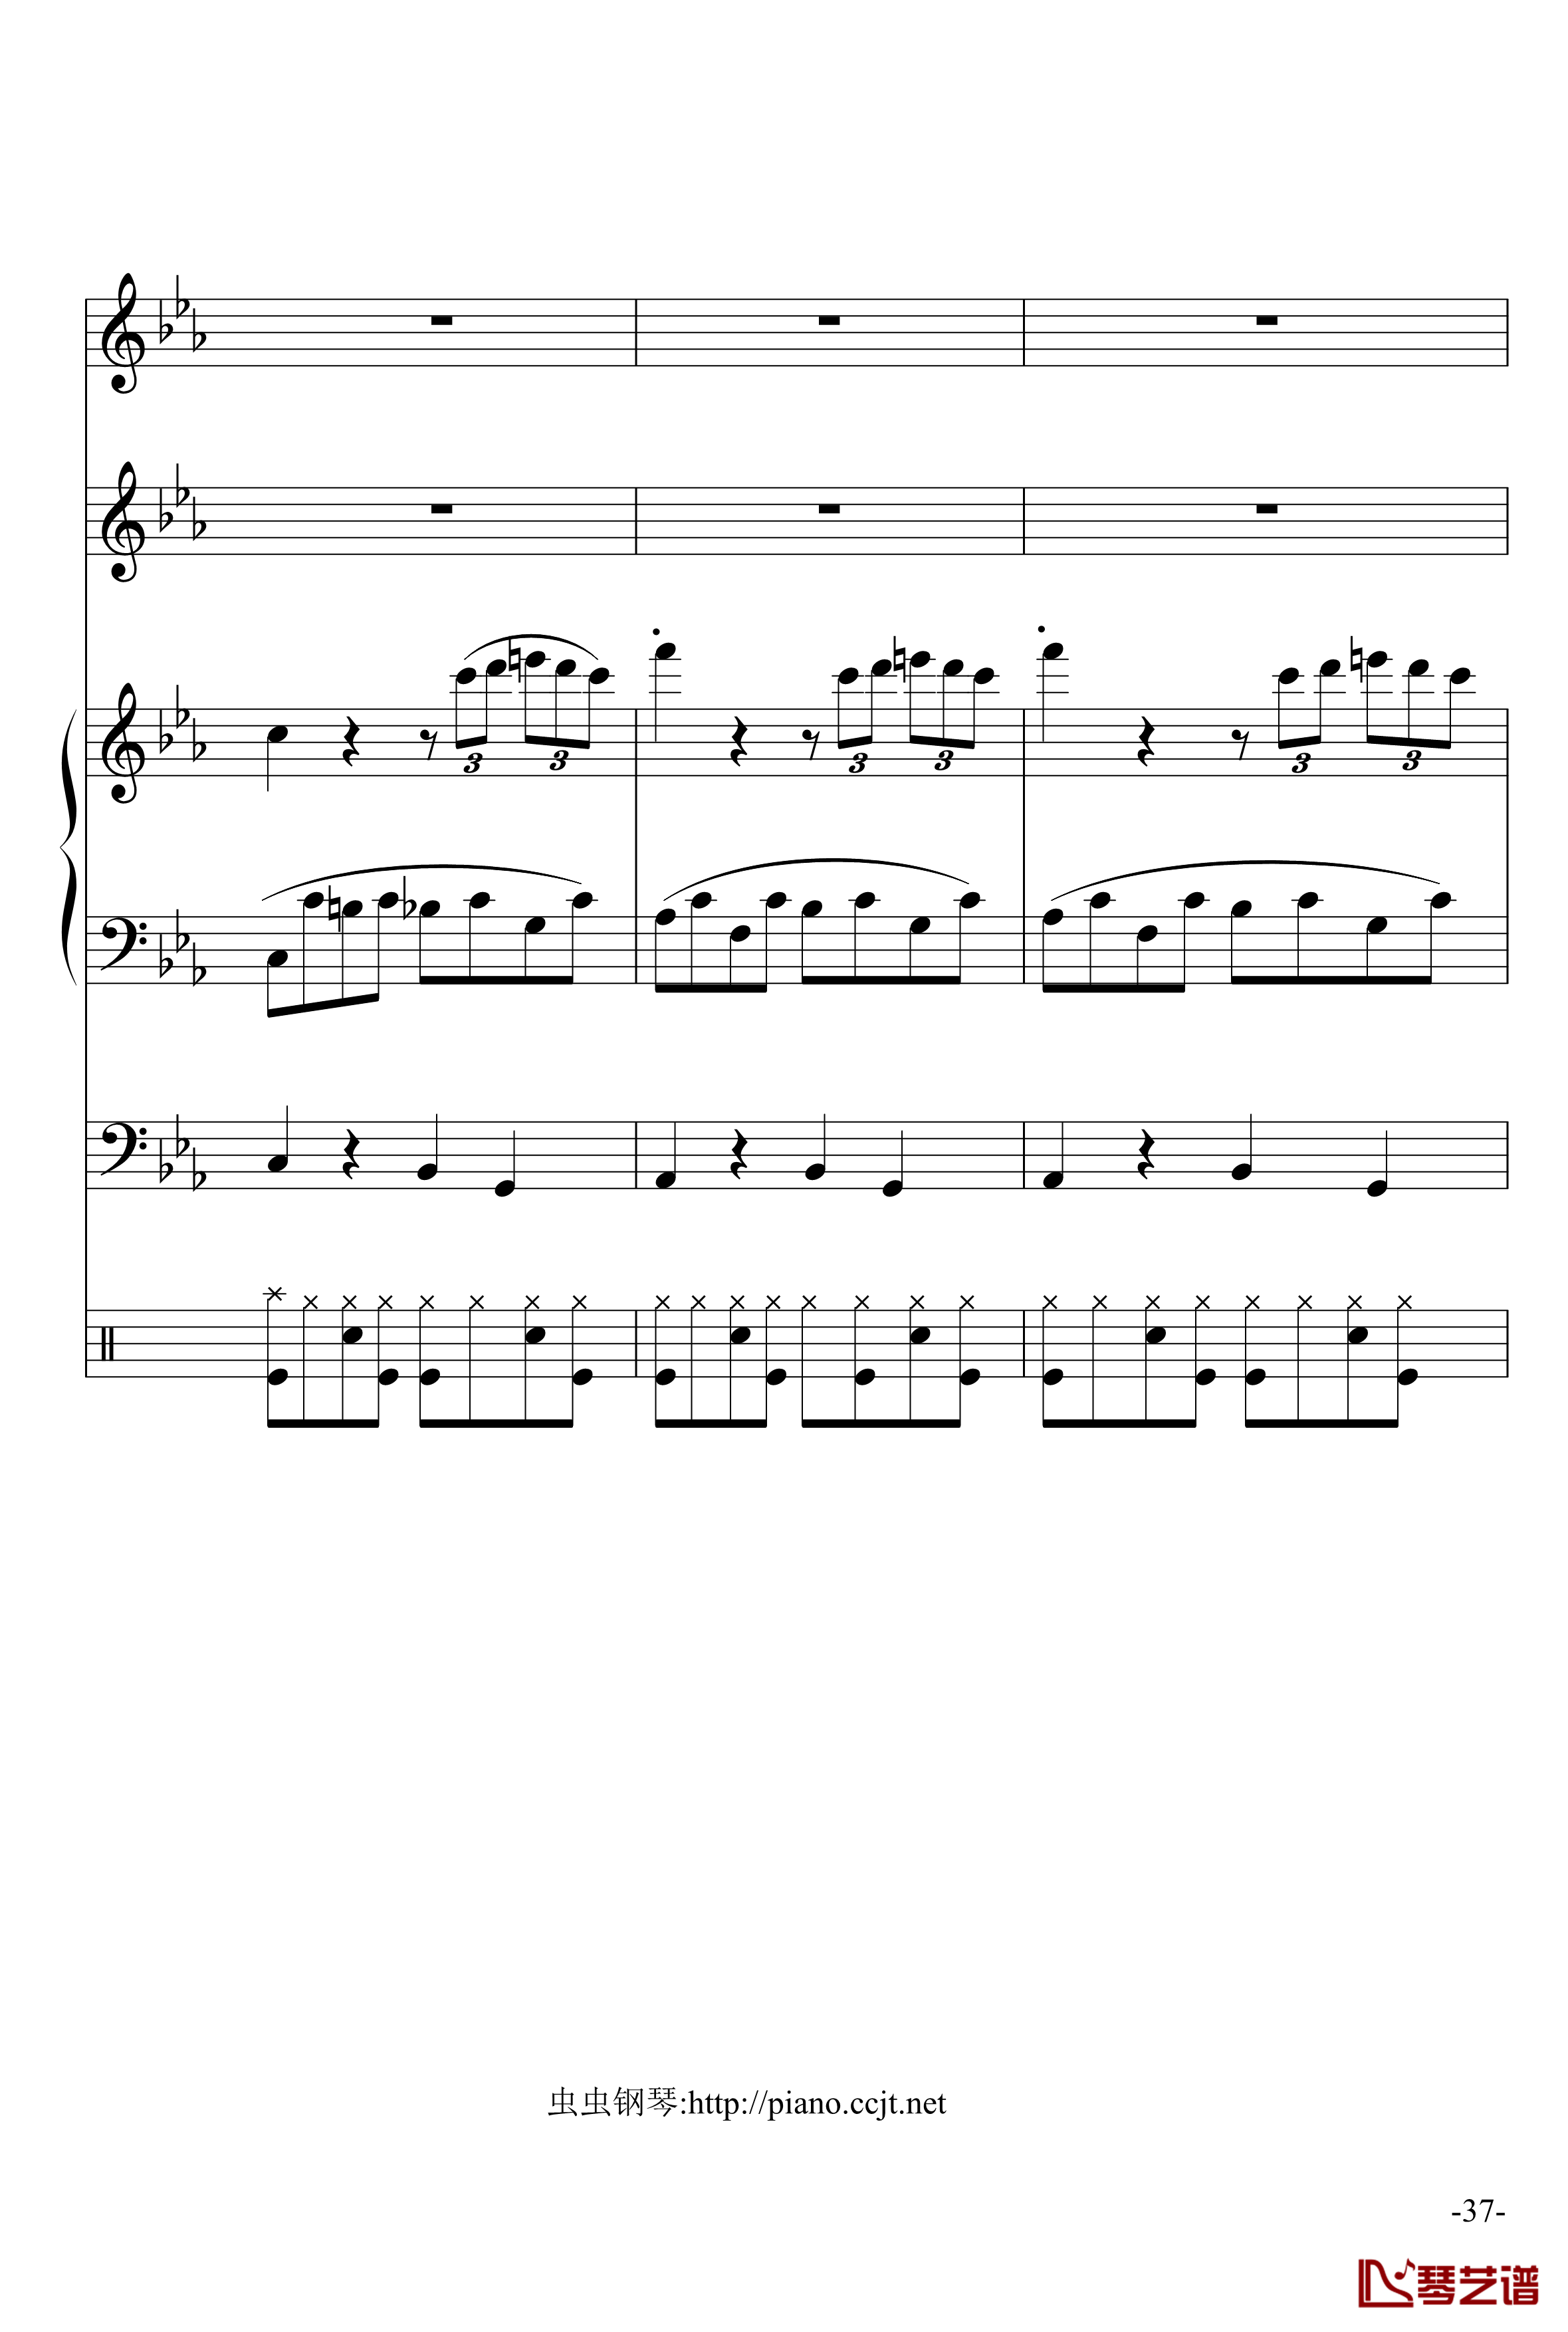 悲怆奏鸣曲钢琴谱-加小乐队-贝多芬-beethoven37